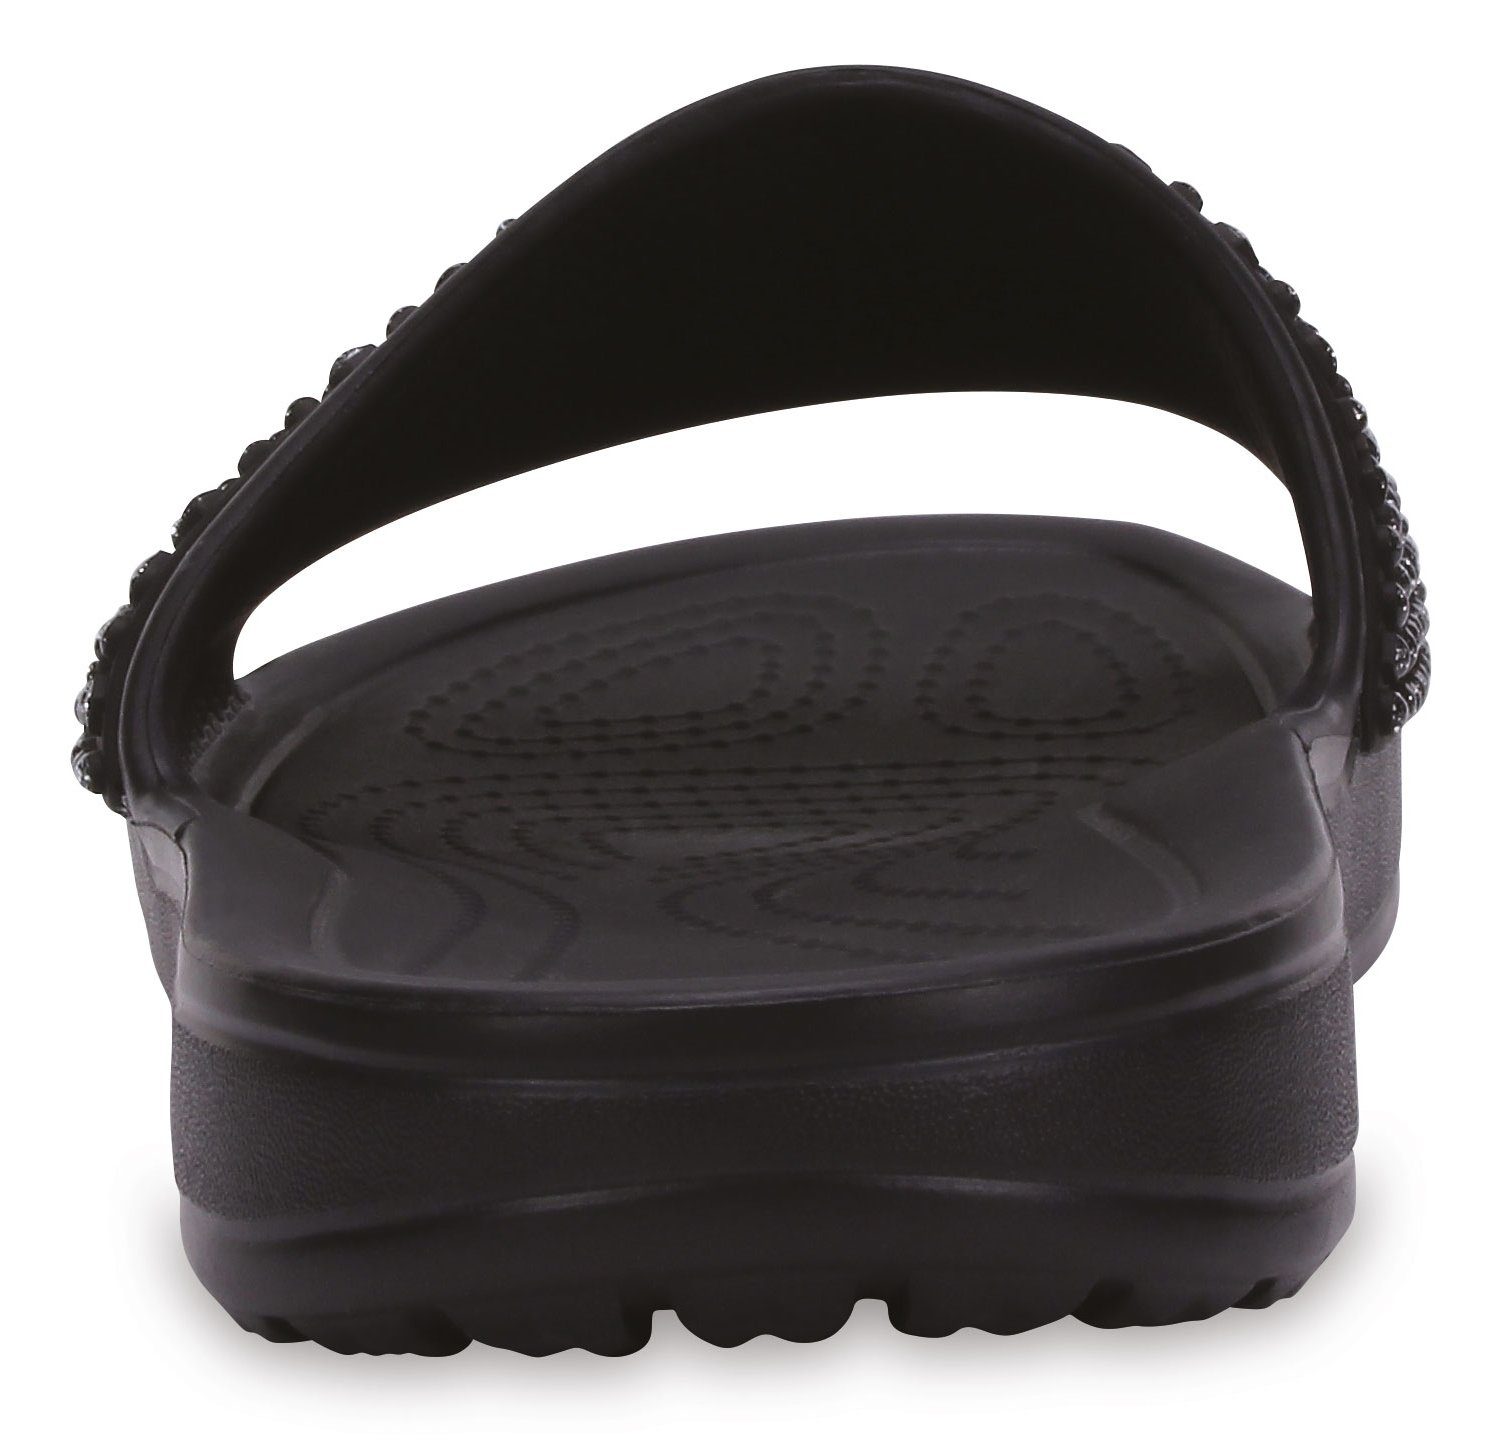 Crocs »Sloane Embellished Slide« Pantolette kaufen | OTTO